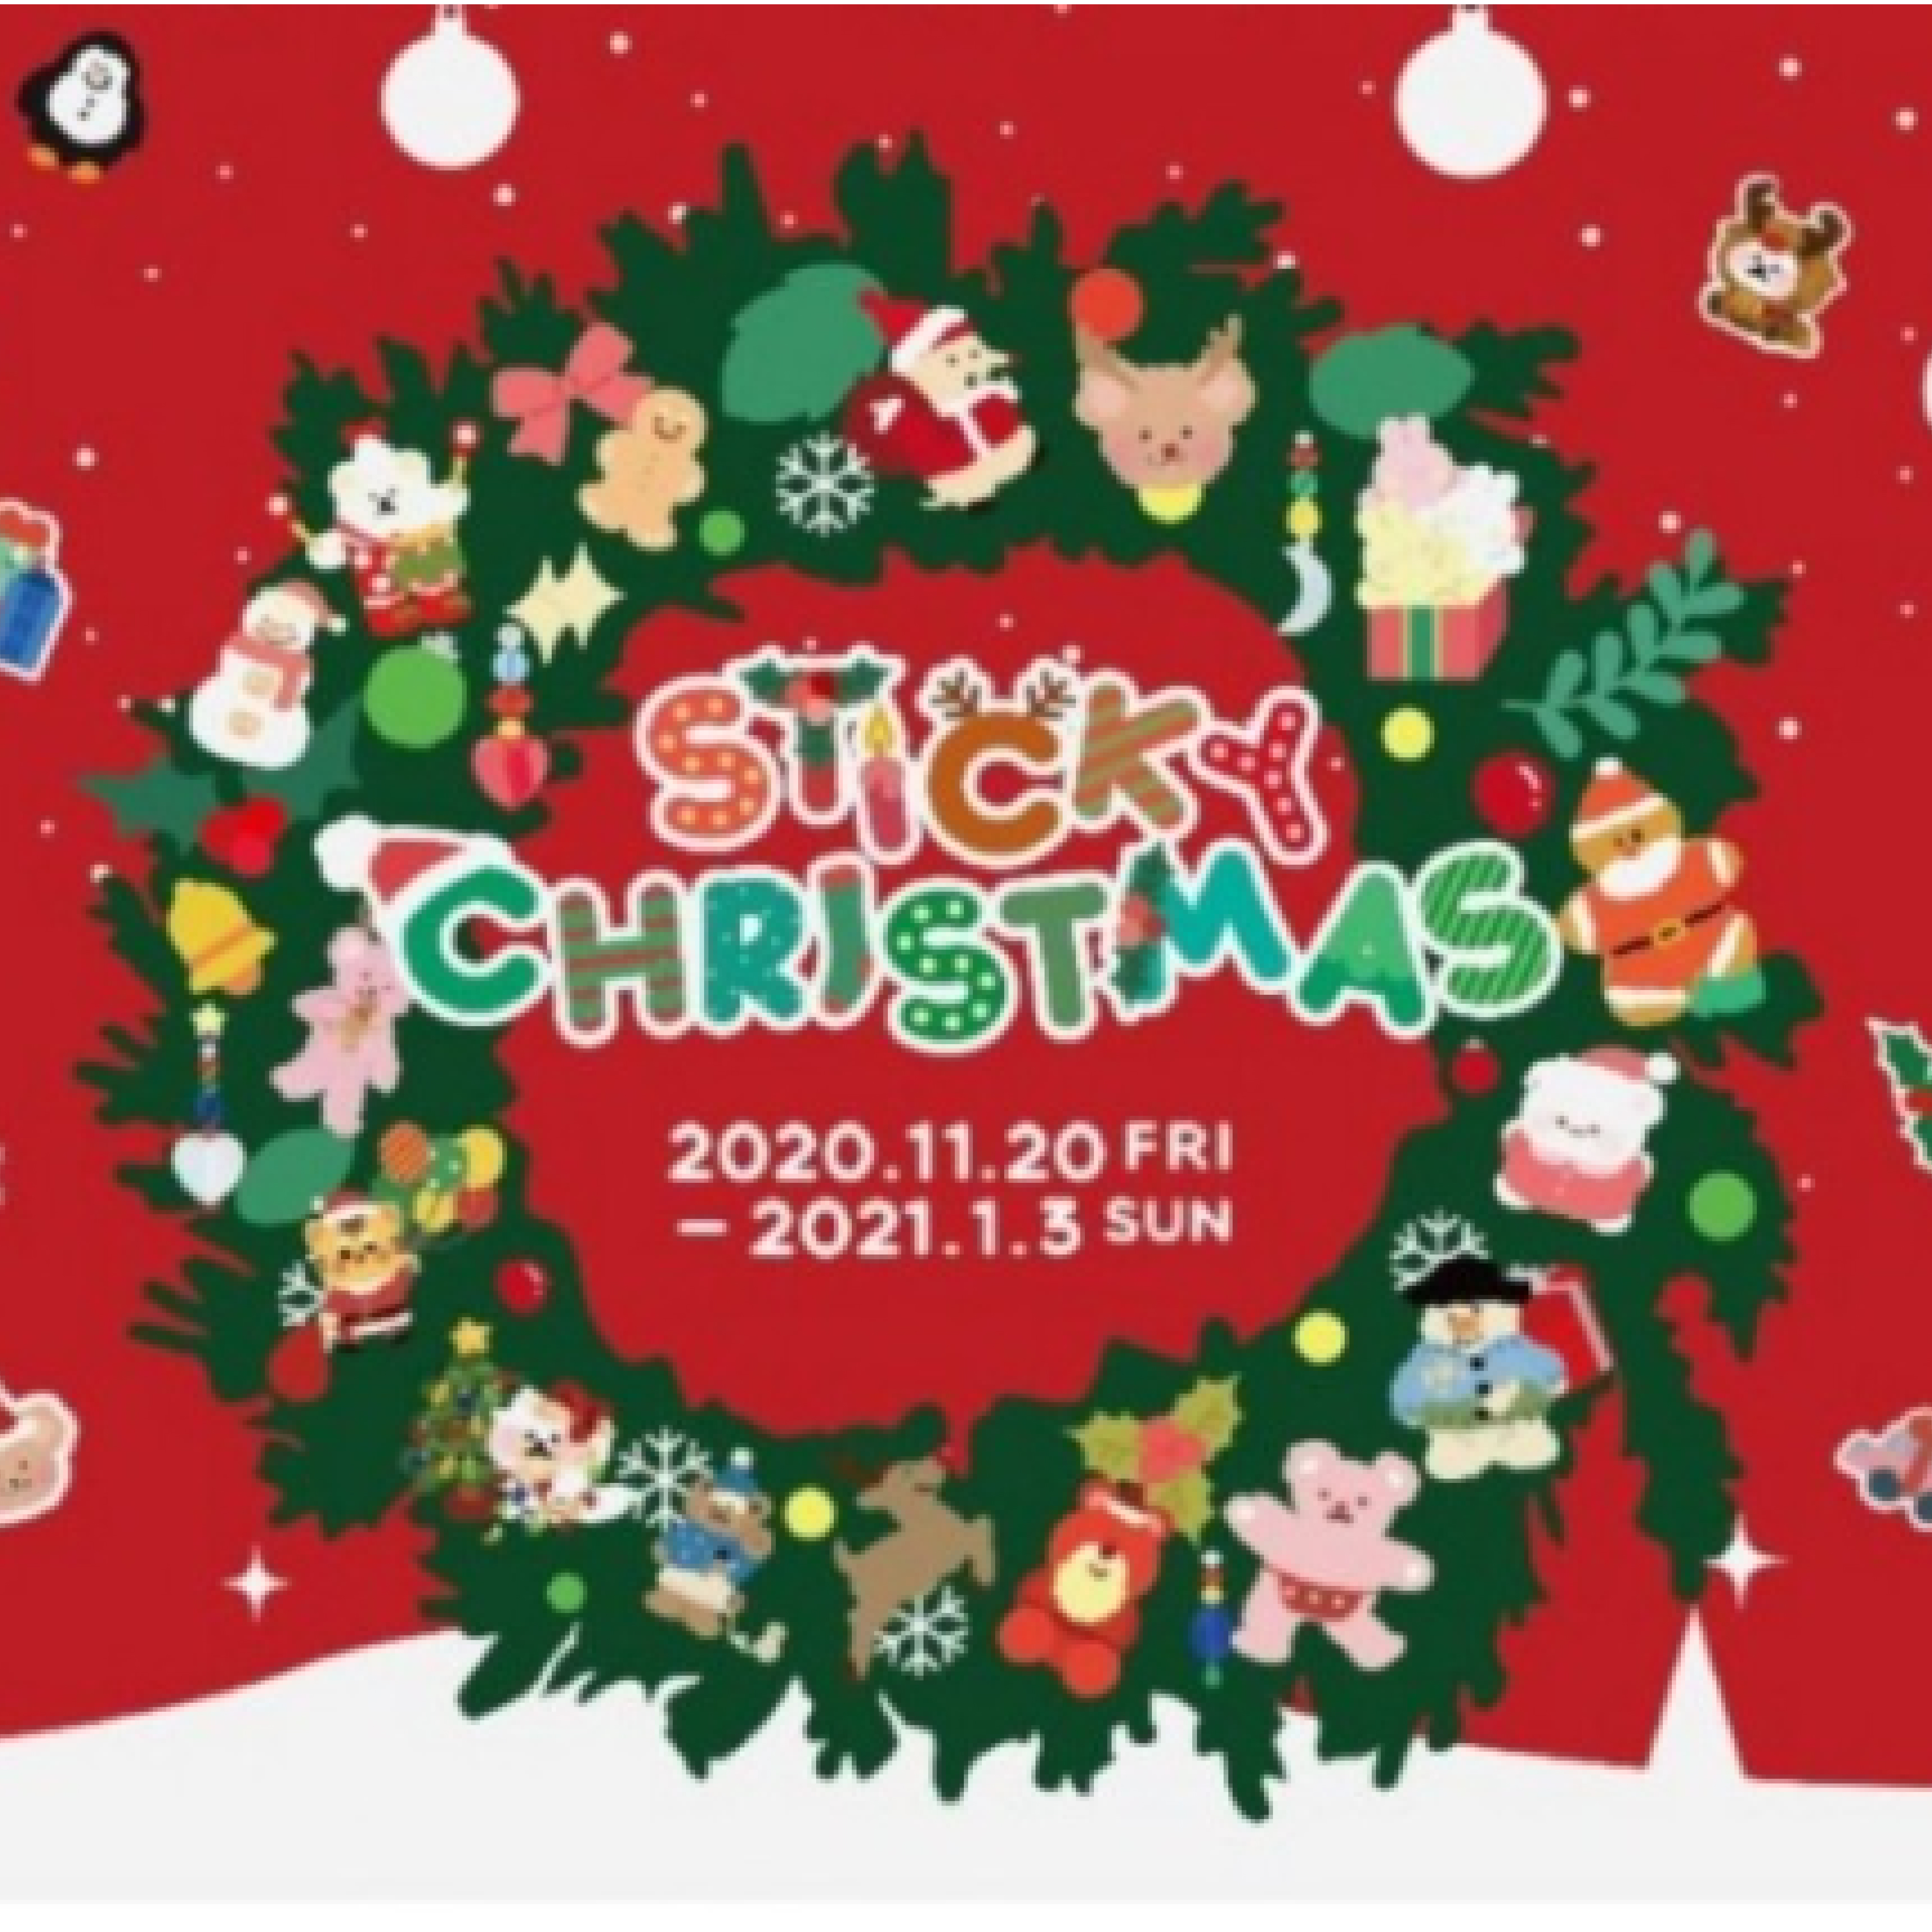 Sticky Christmas 展 (2020. 11. 20 ~ 2021. 1. 3)